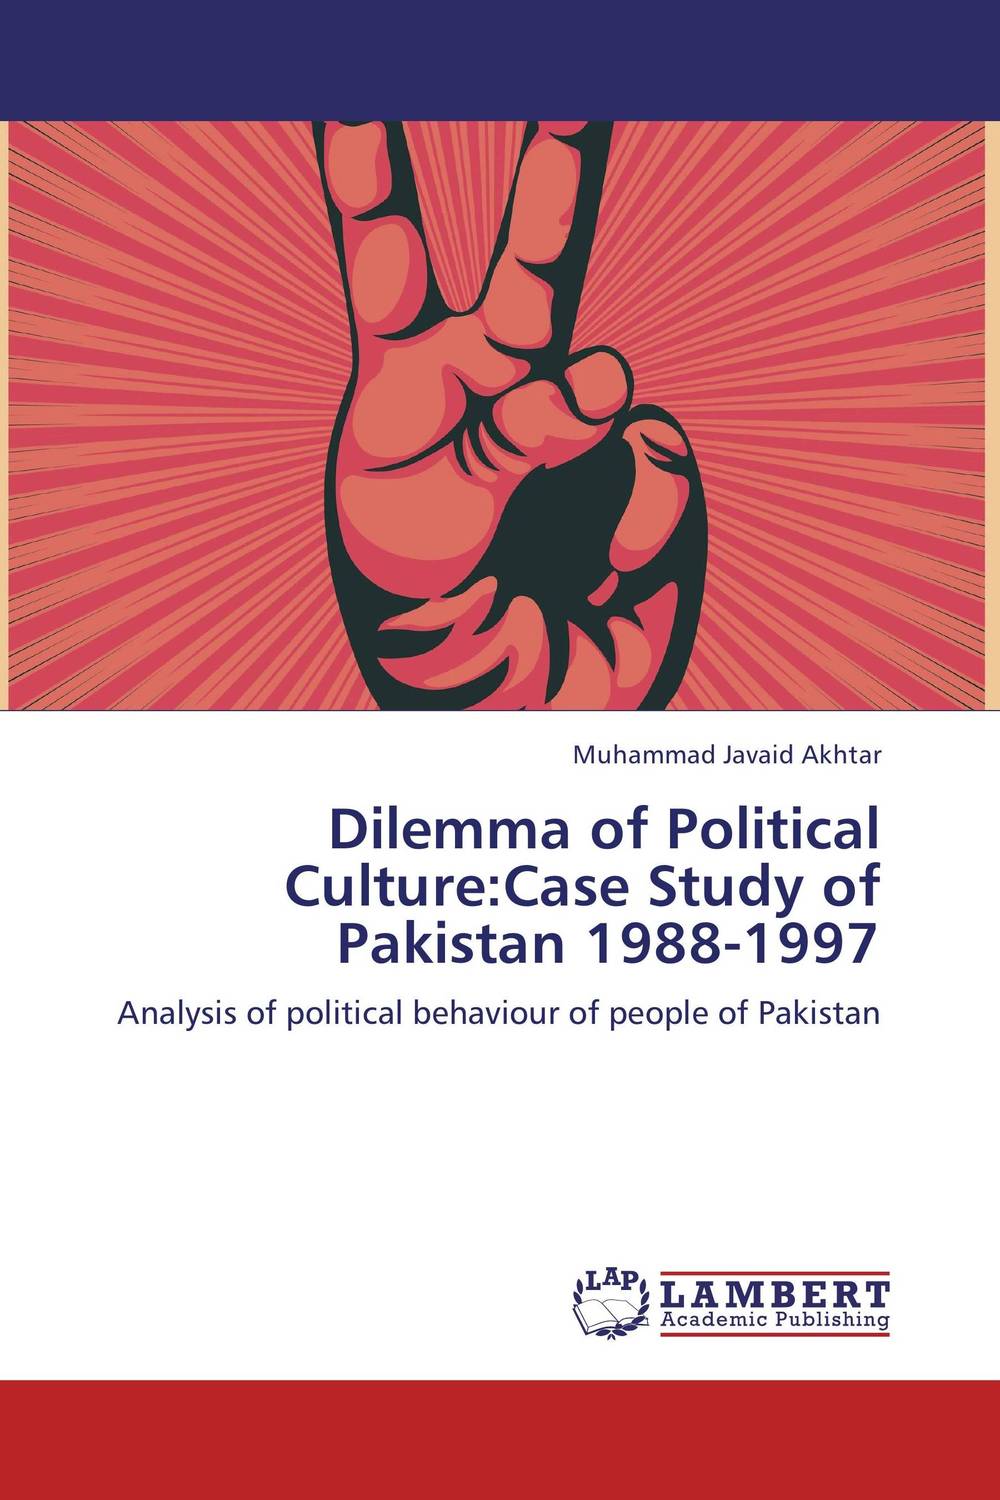 Dilemma of Political Culture:Case Study of Pakistan 1988-1997